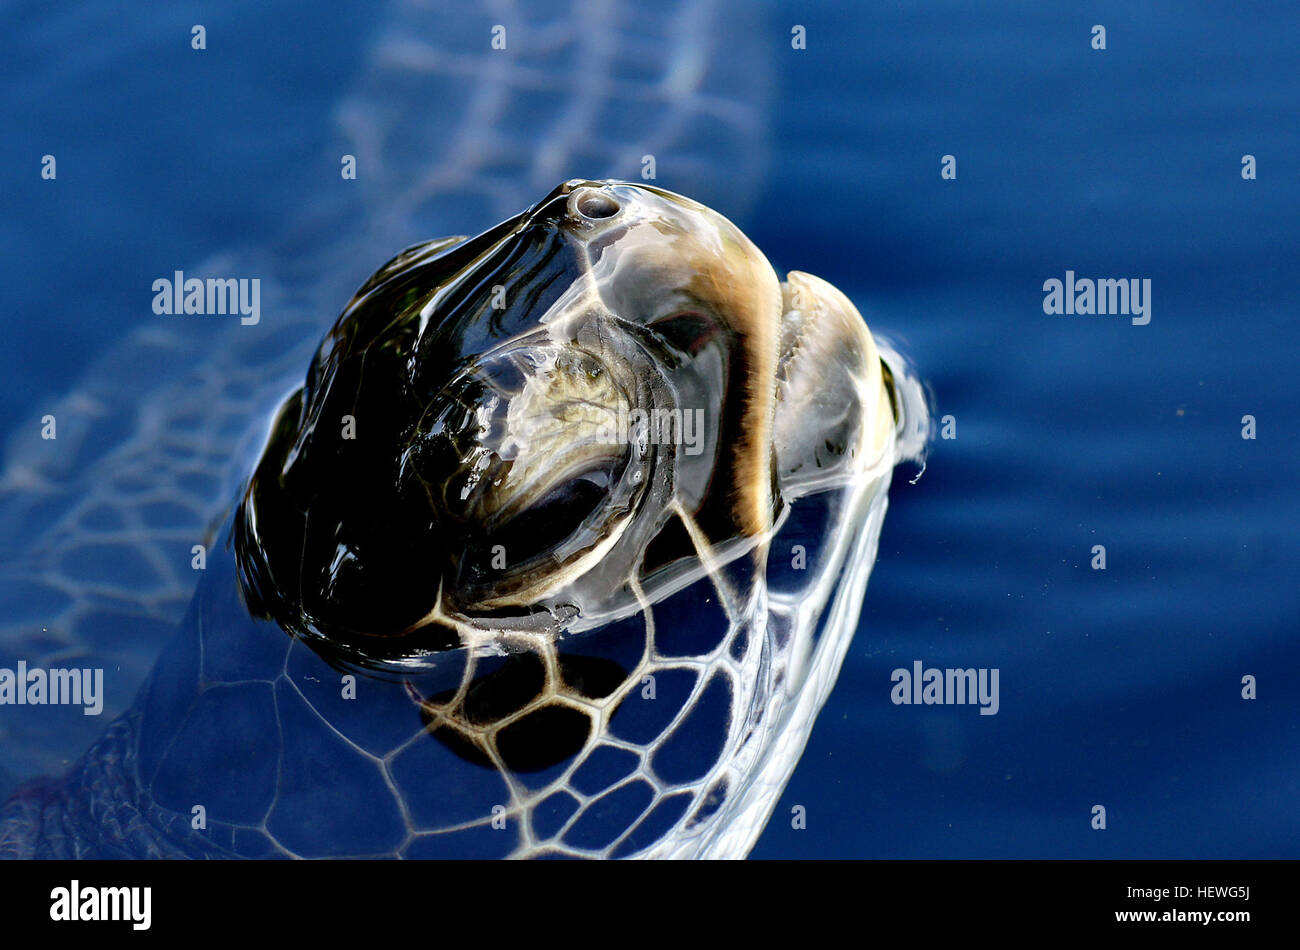 La tortuga de mar verde, también conocida como la tortuga verde, la tortuga negra o tortuga verde del Pacífico, es una gran tortuga marina de la familia Cheloniidae. Es la única especie del género Chelonia. Foto de stock